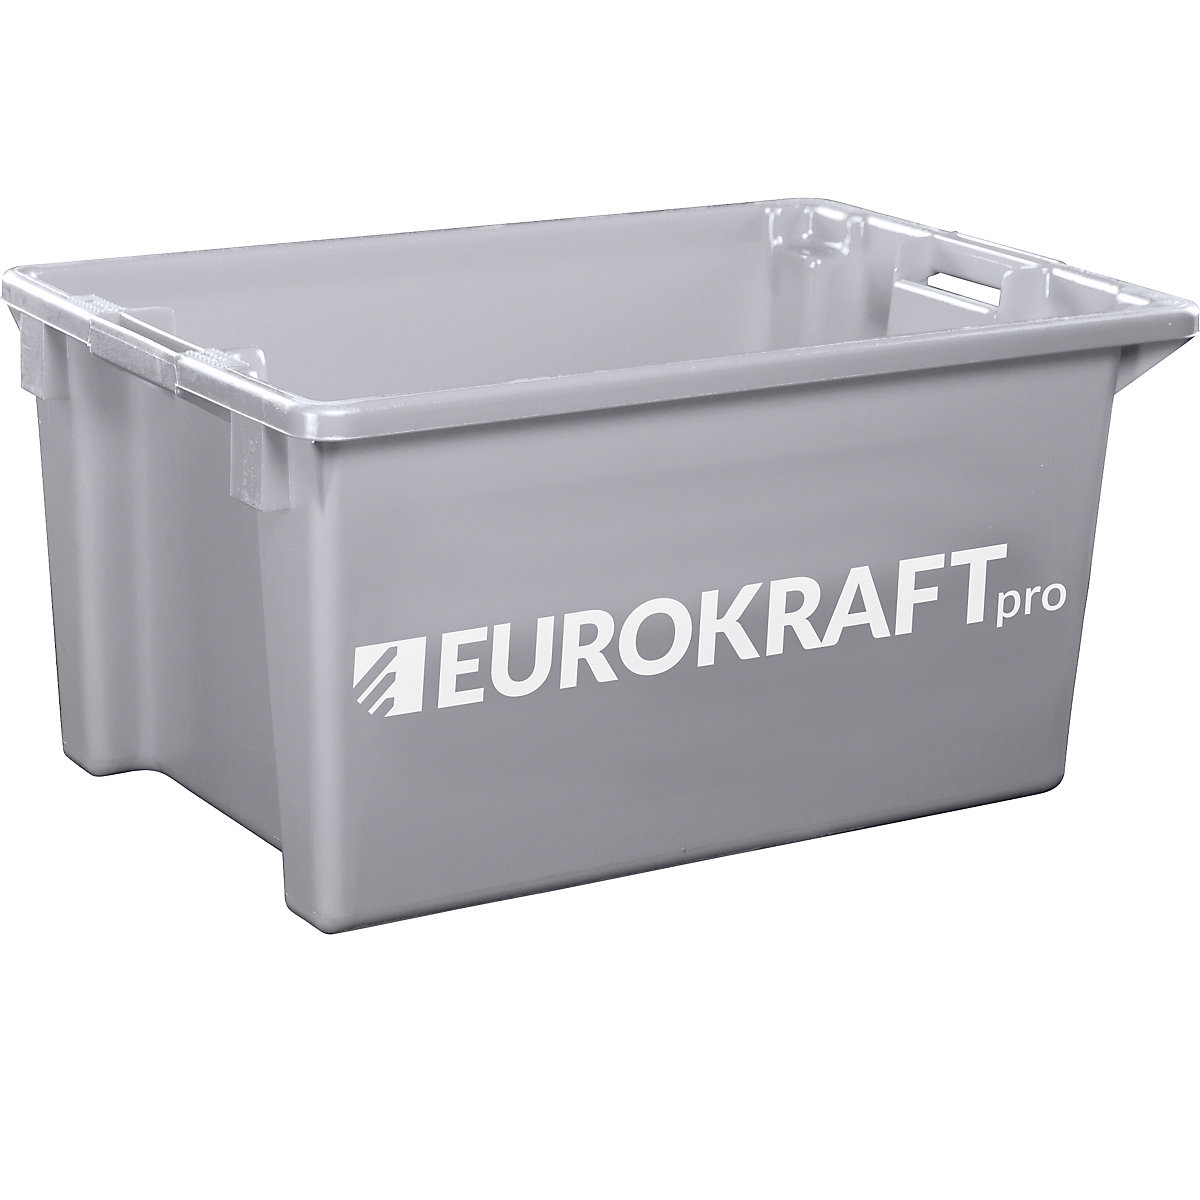 EUROKRAFTpro – Spremnik za slaganje od polipropilena pogodnog za kontakt s prehrambenim proizvodima, volumen 70 l, pak. 2 kom., zatvorene stijenke i dno, u sivoj boji